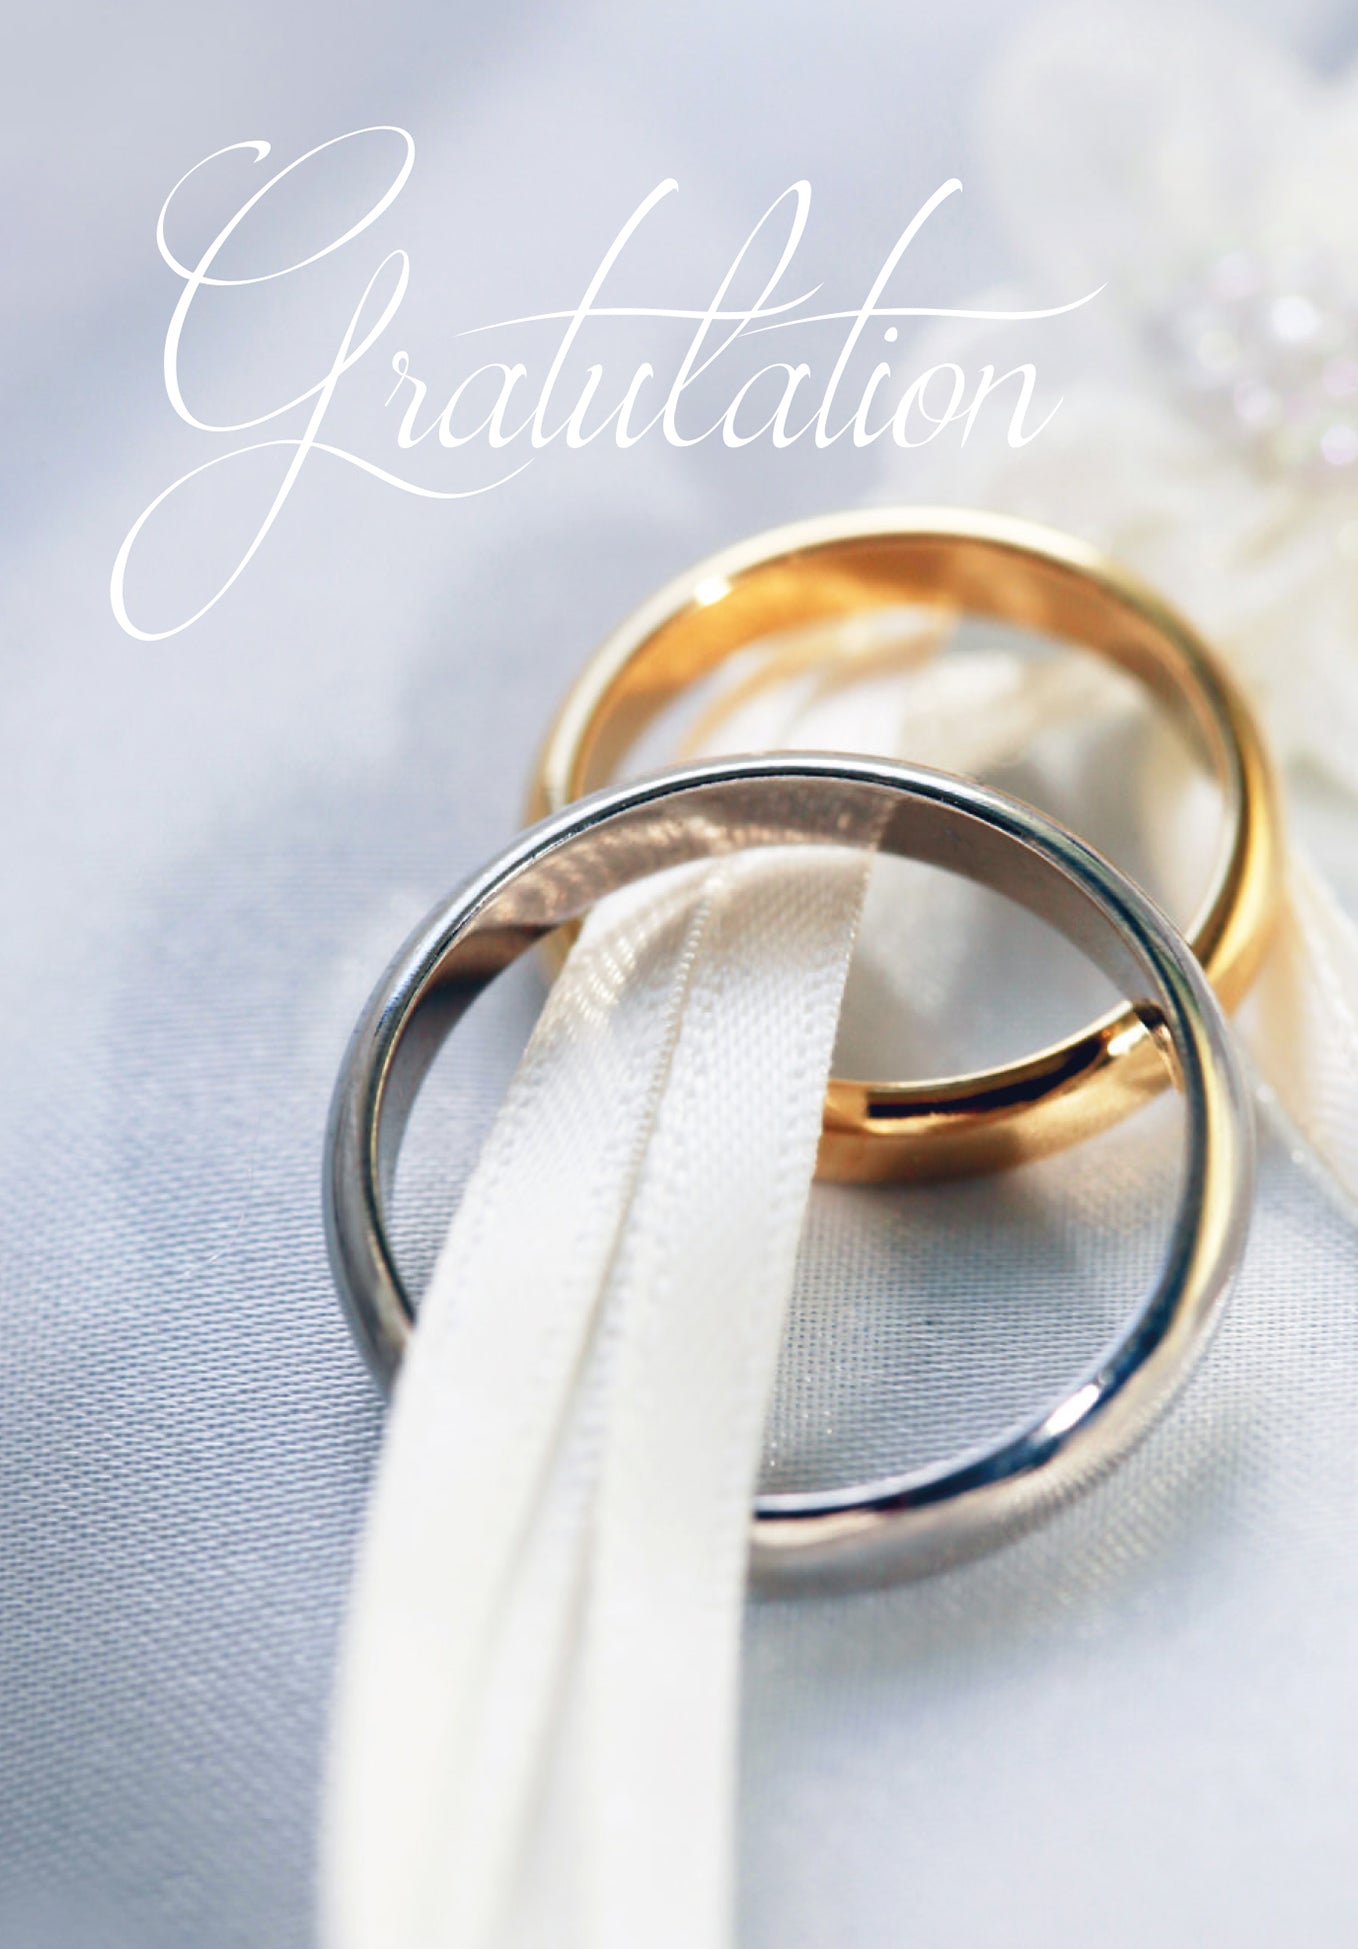 Gratulation - Hochzeit (Gutscheinwert)